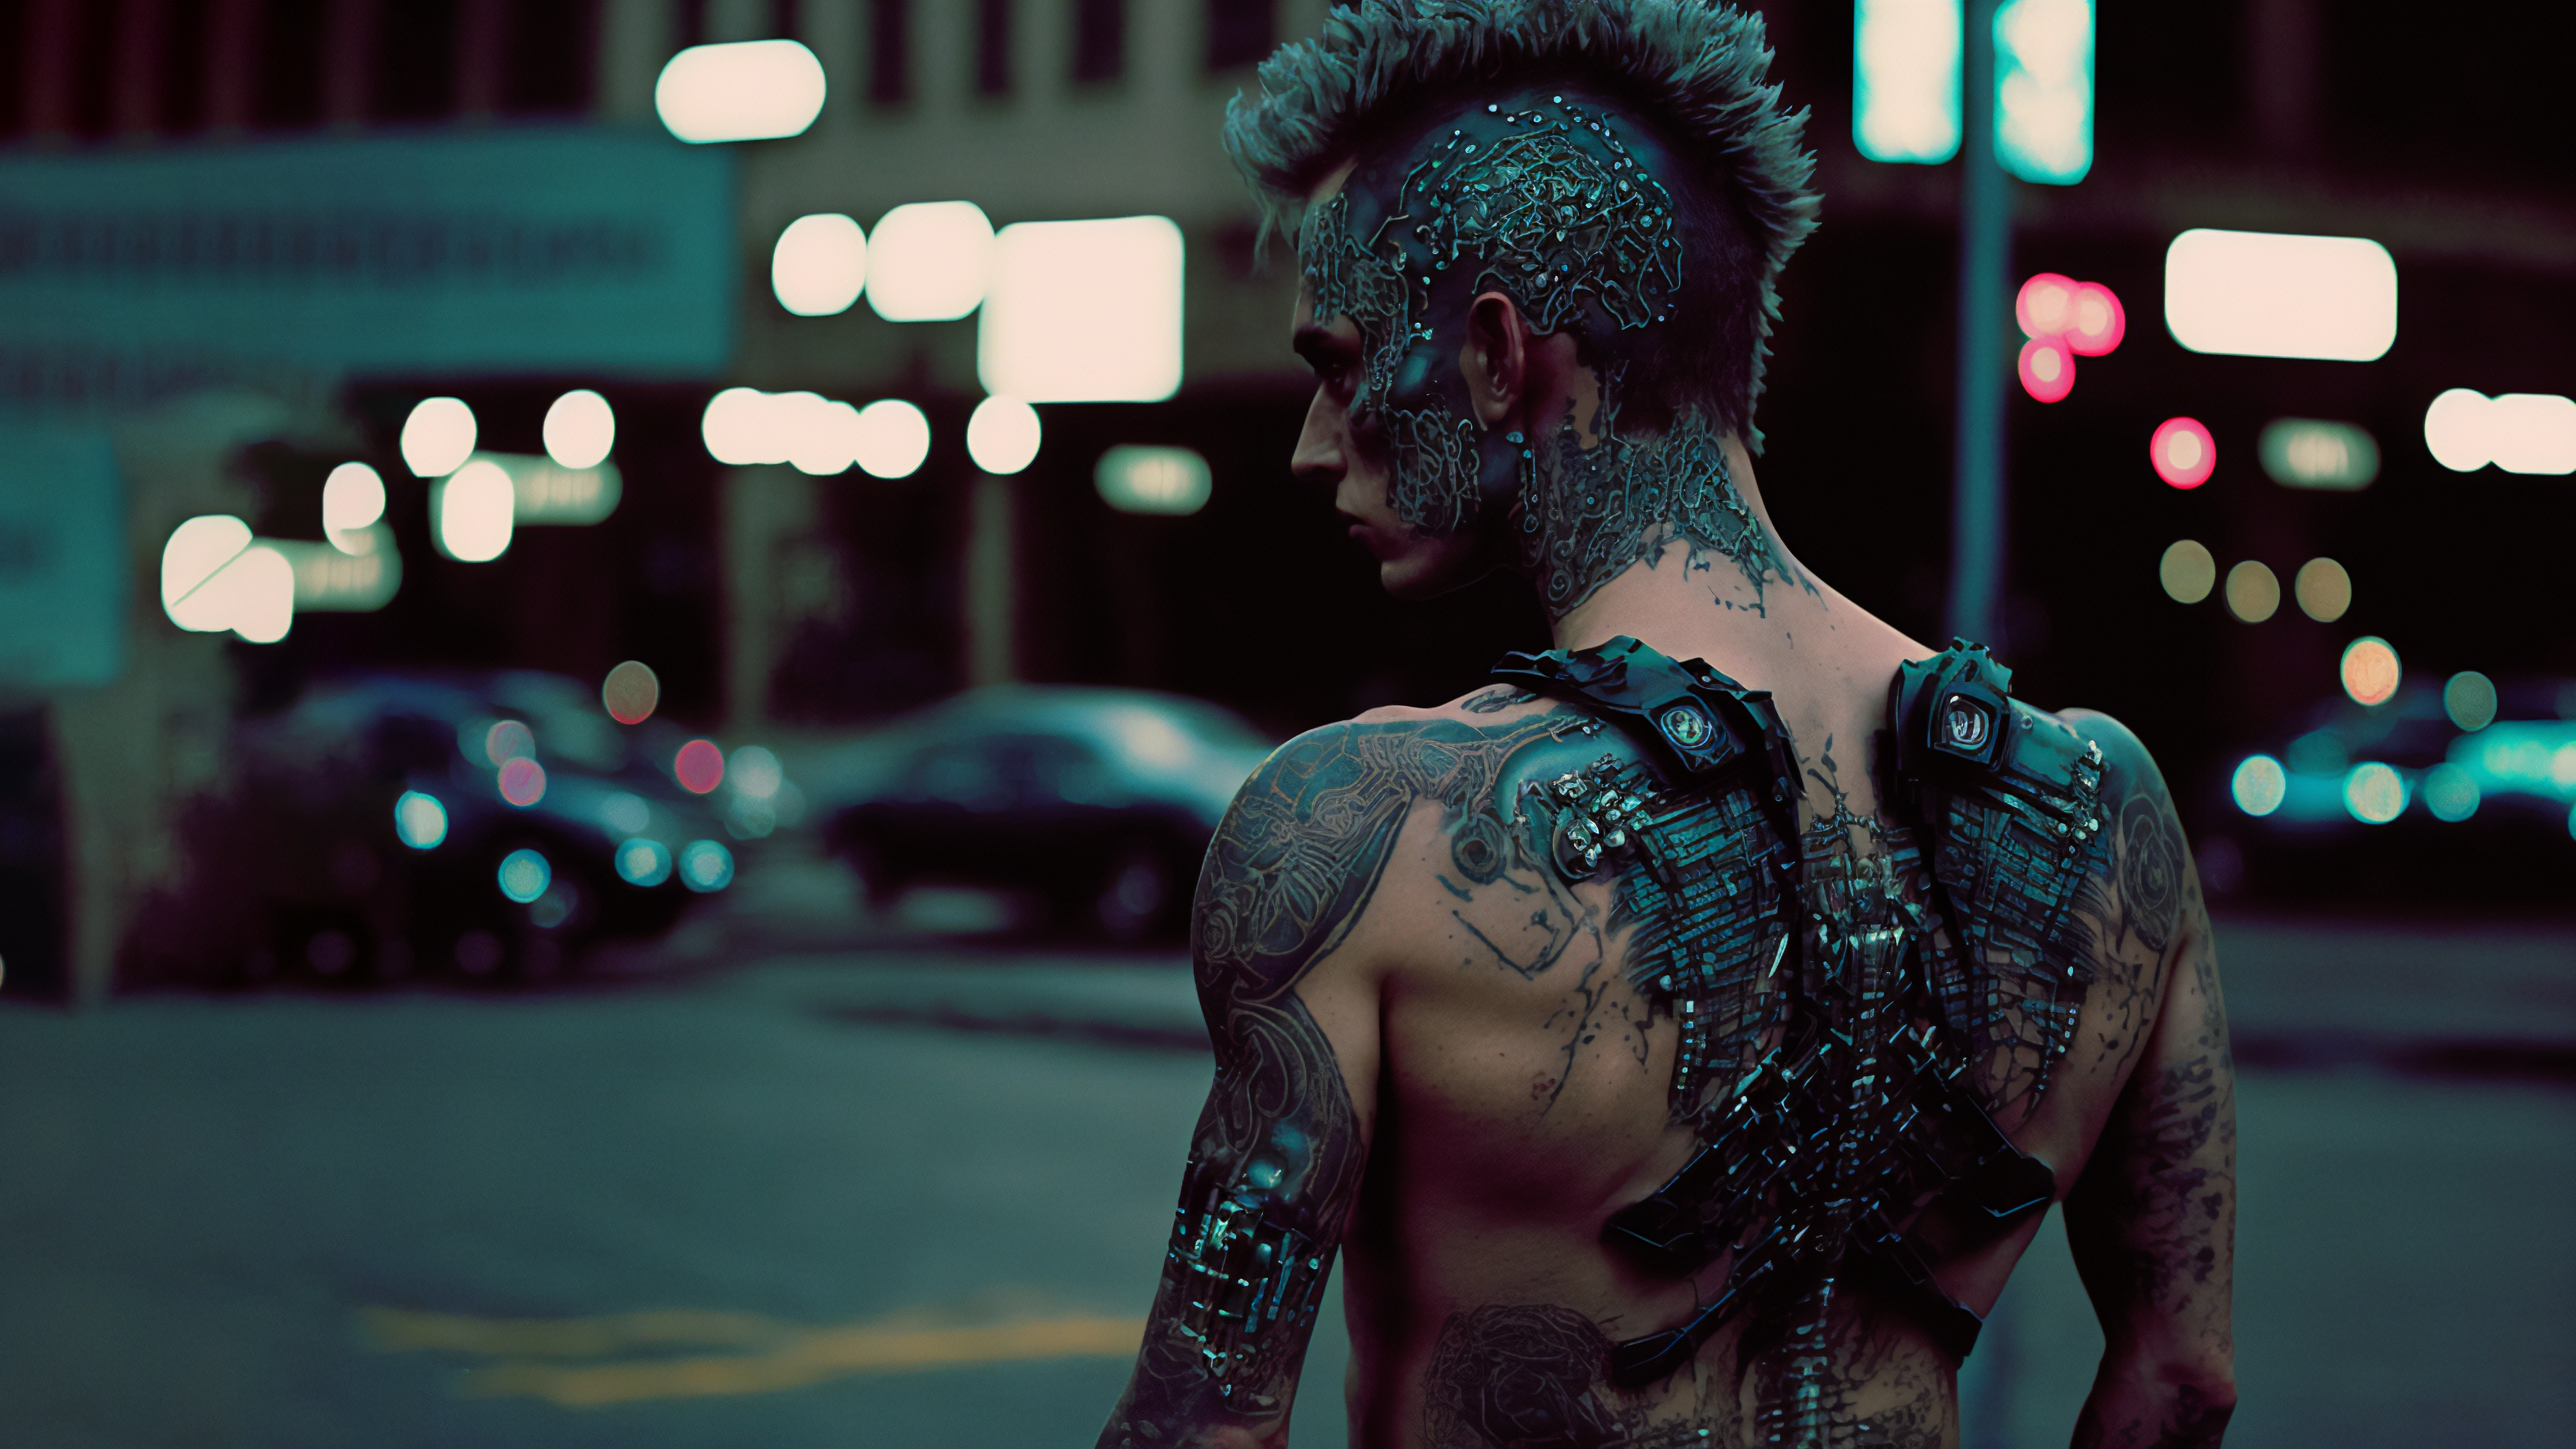 Cyberpunk Street Cyborg Tattoo Futuristic Mohawk 3641x2048